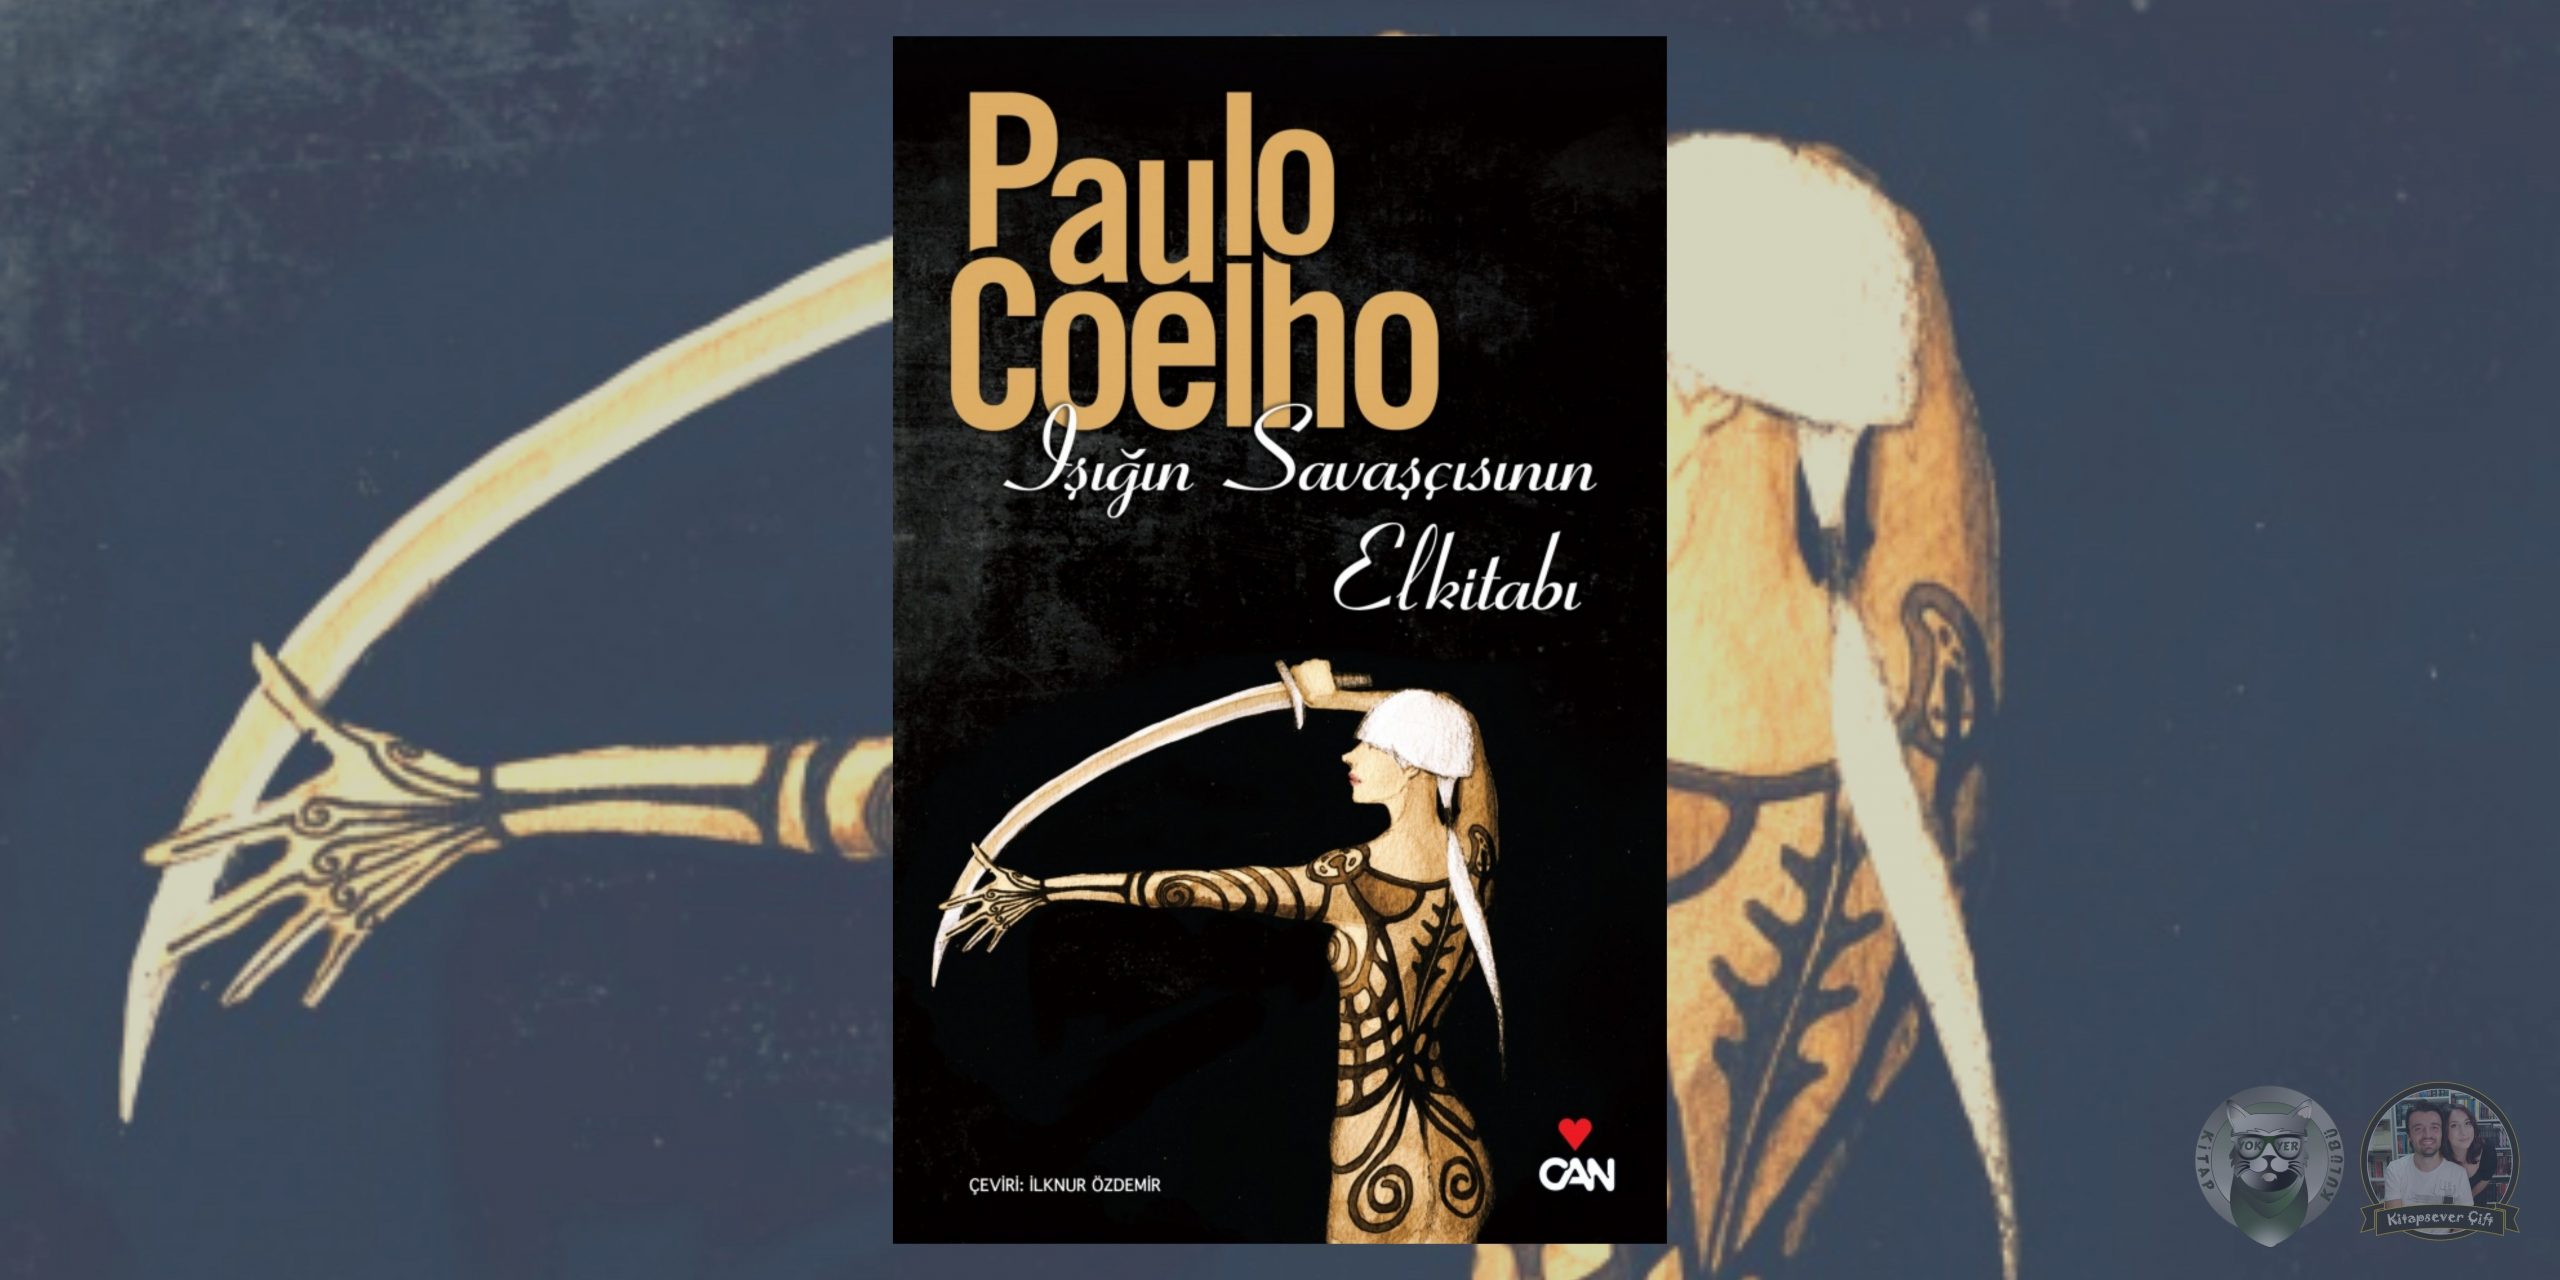 paulo coelho kitapları 1 – isigin savascisinin elkitabi scaled